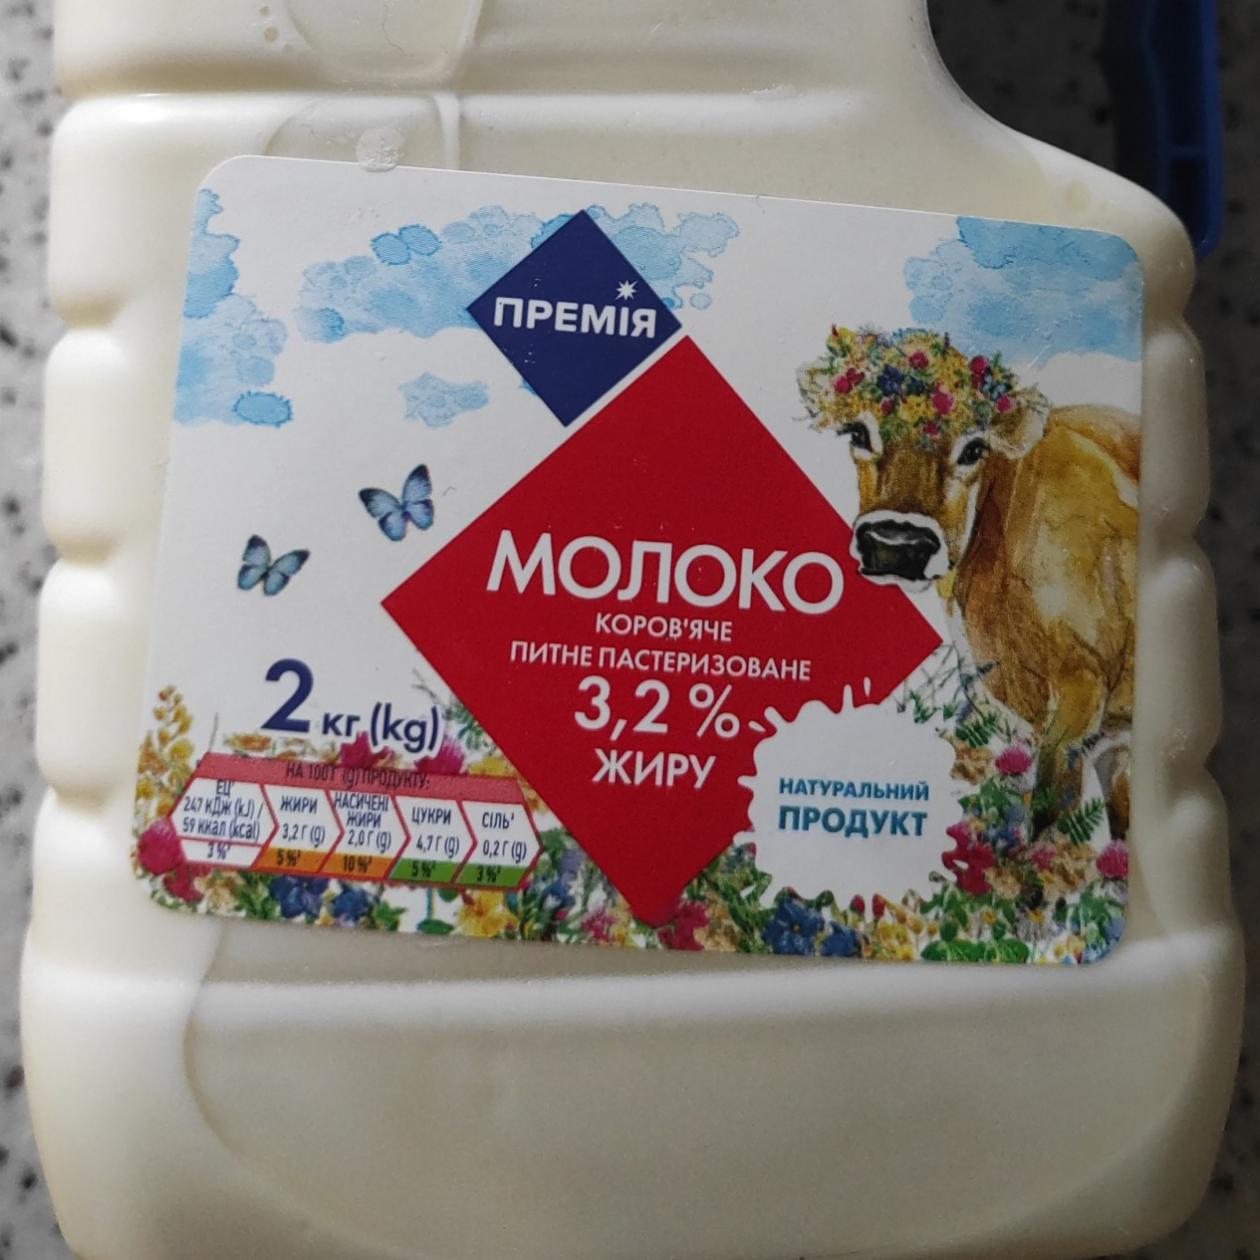 Фото - Молоко 3.2% Премия